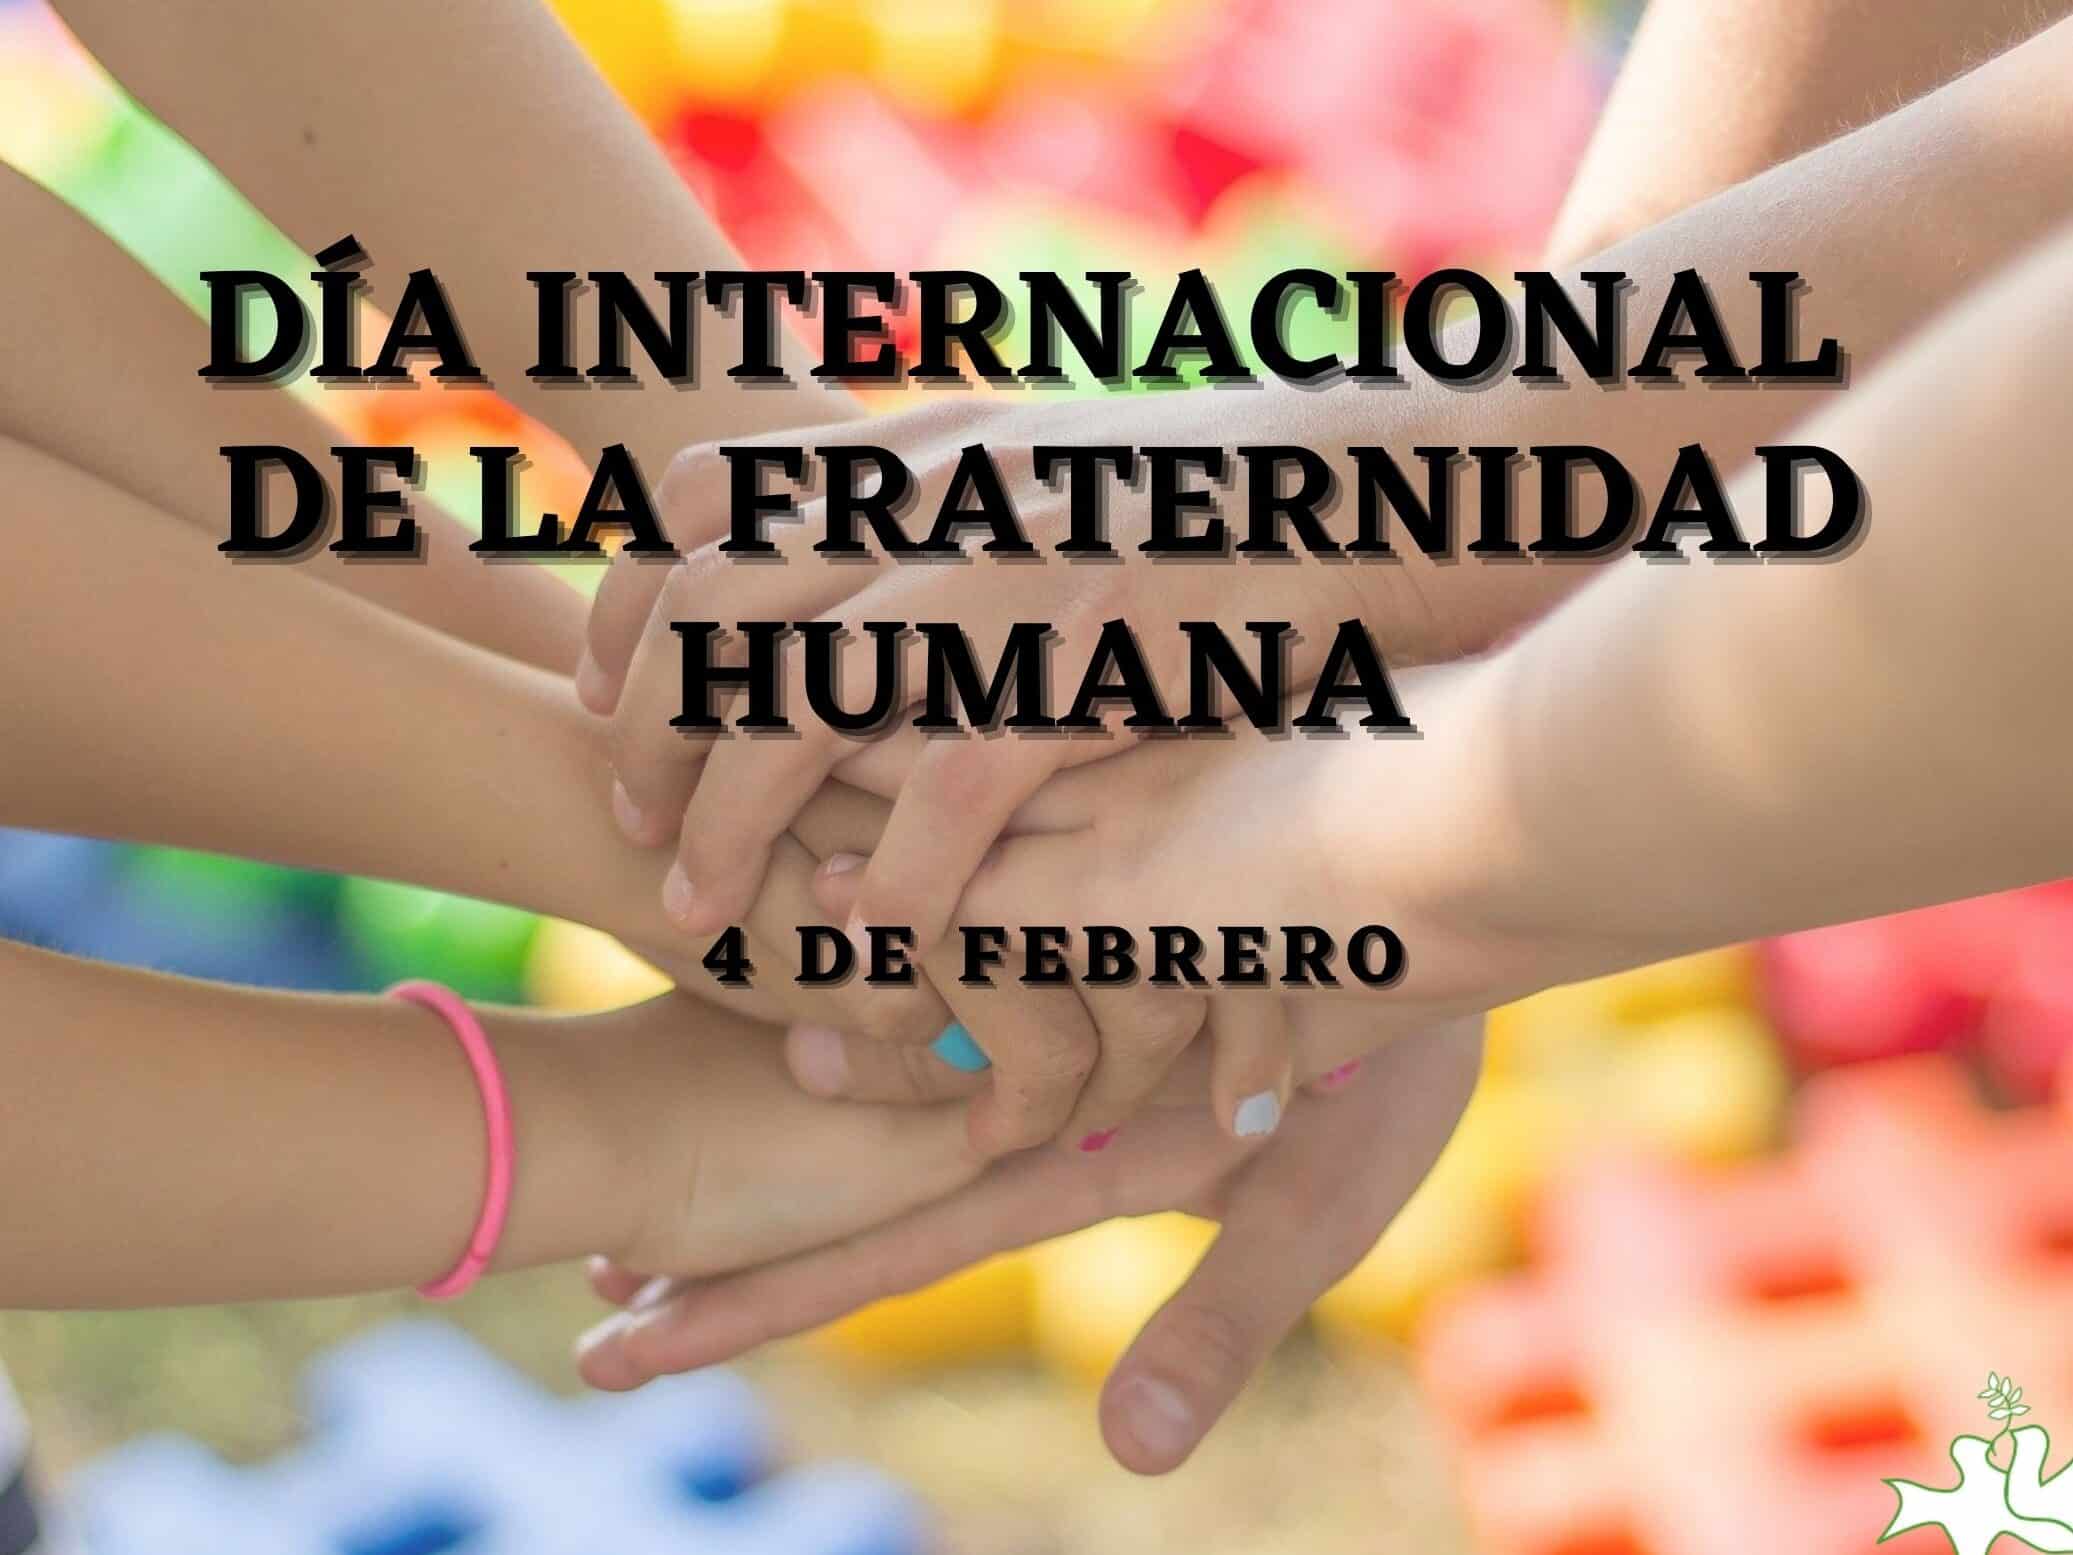 dia internacional de la fraternidad humana 4 de febrero